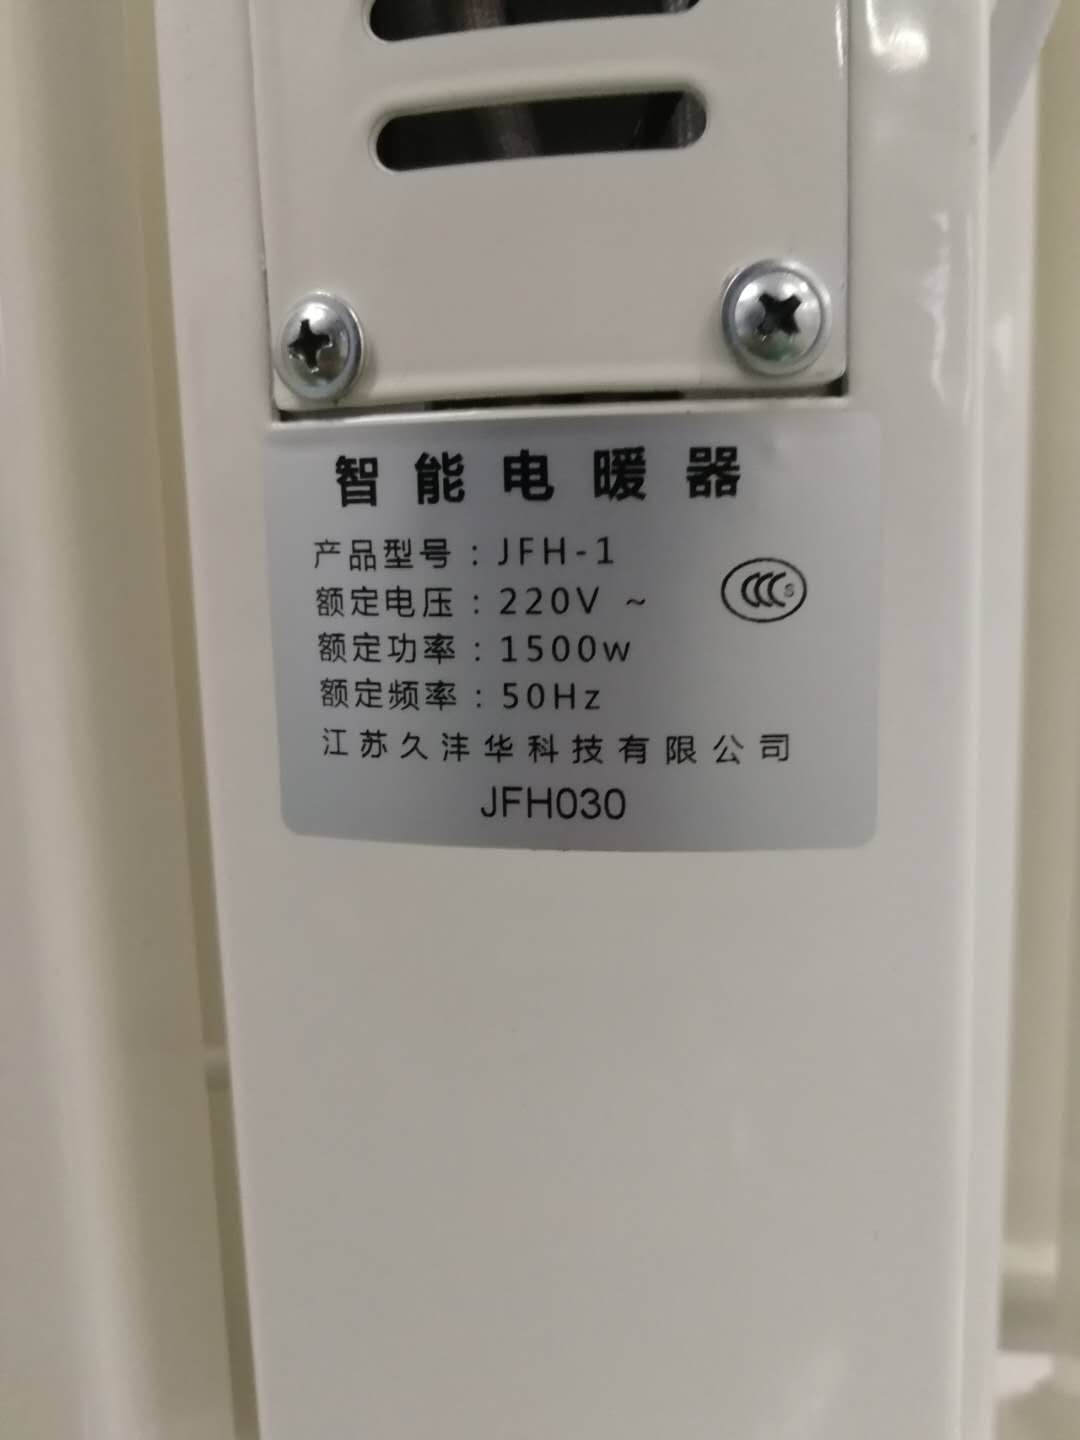 汣沣华智能变频电暖器汣沣华智能变频电暖器 JFH-1厂家直销，2件起批【江苏久沣华科技有限公司】